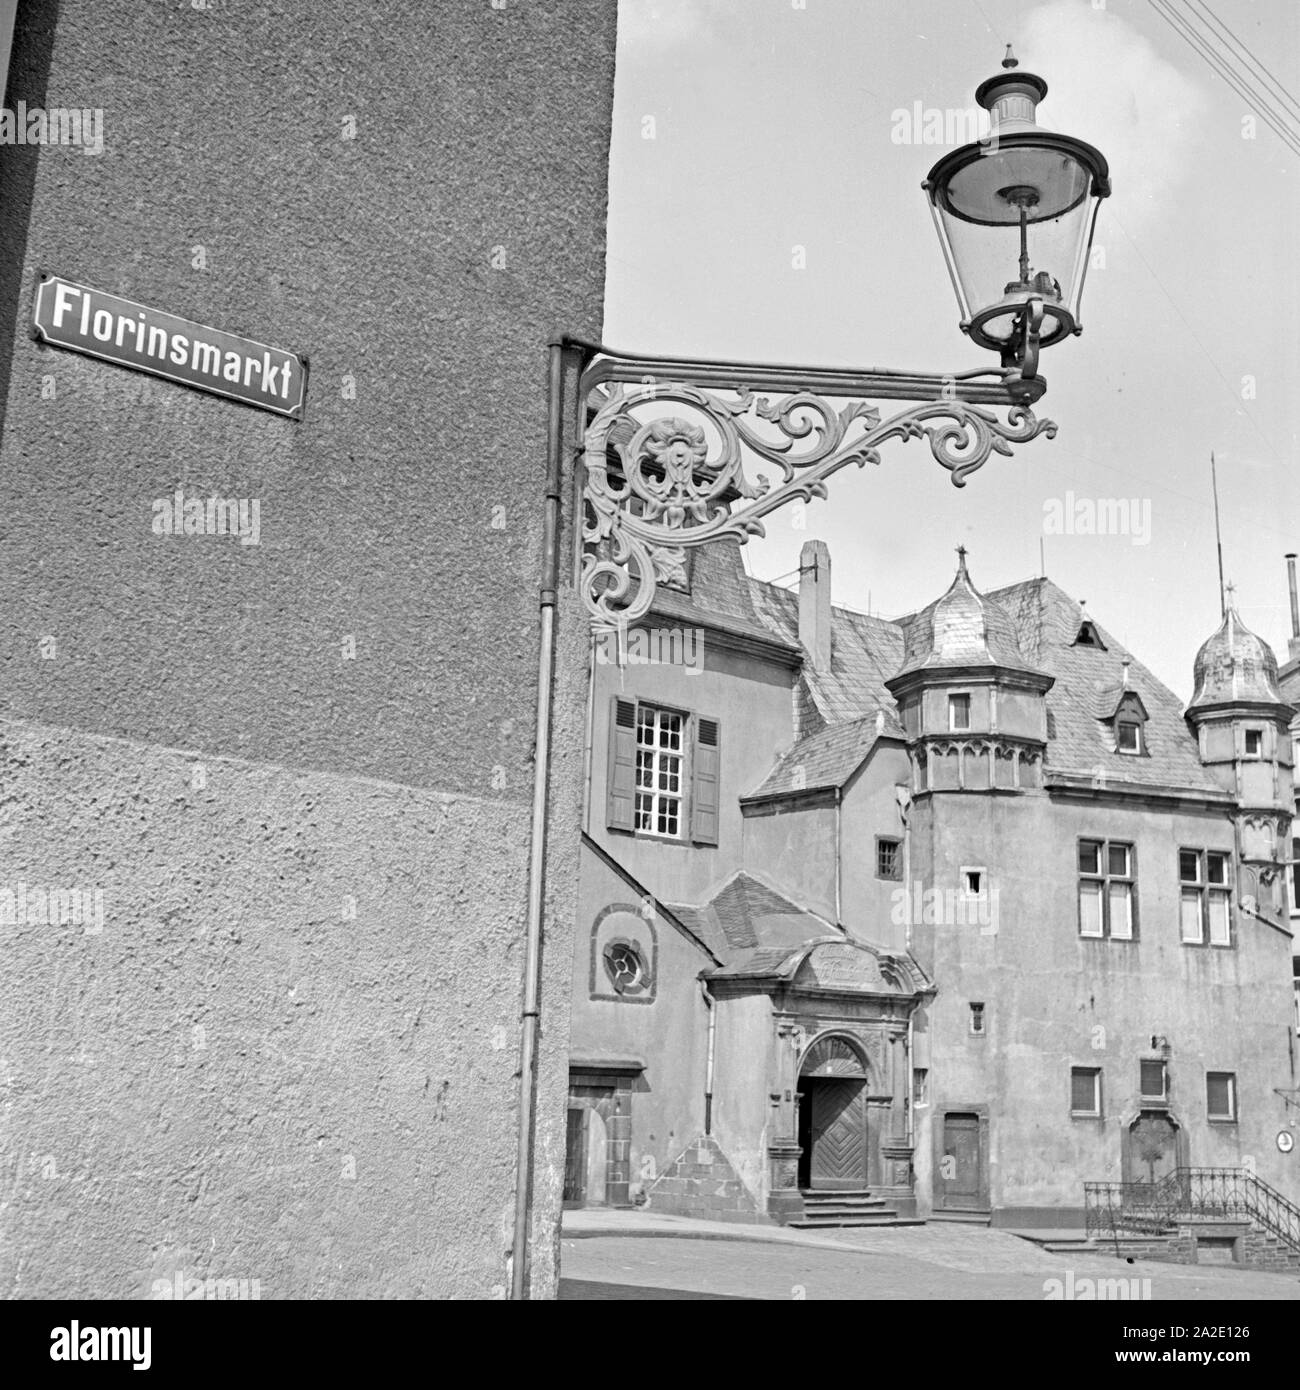 Das alte Kaufhaus auf dem Florinsmarkt di Coblenza, Deutschland 1930er Jahre. Vecchio grande magazzino e la casa danzante presso il mercato Florinsmarkt a Coblenza, Germania 1930s. Foto Stock